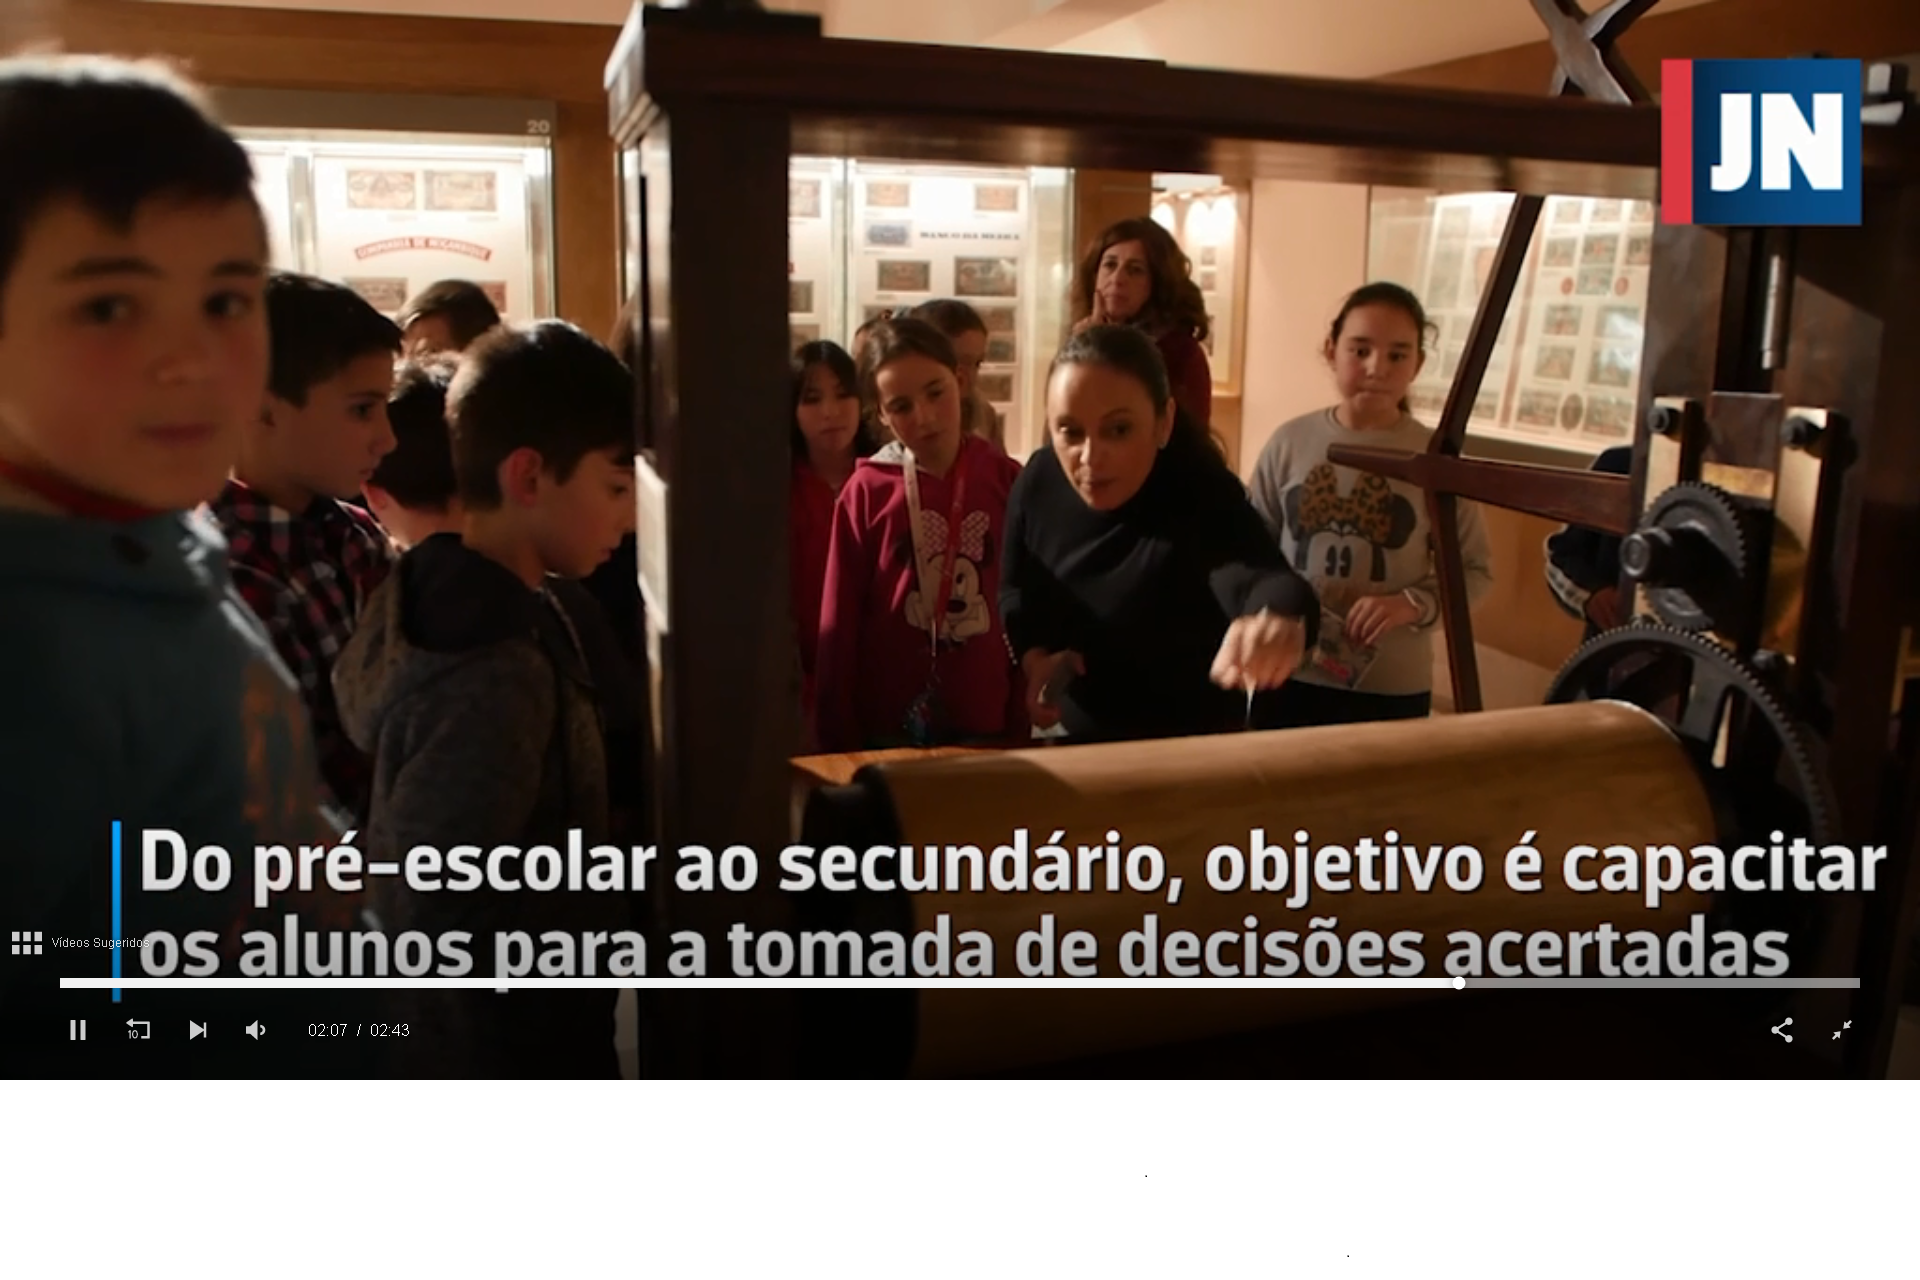 Jornal de Notícias acompanha visita ao Museu do papel Moeda